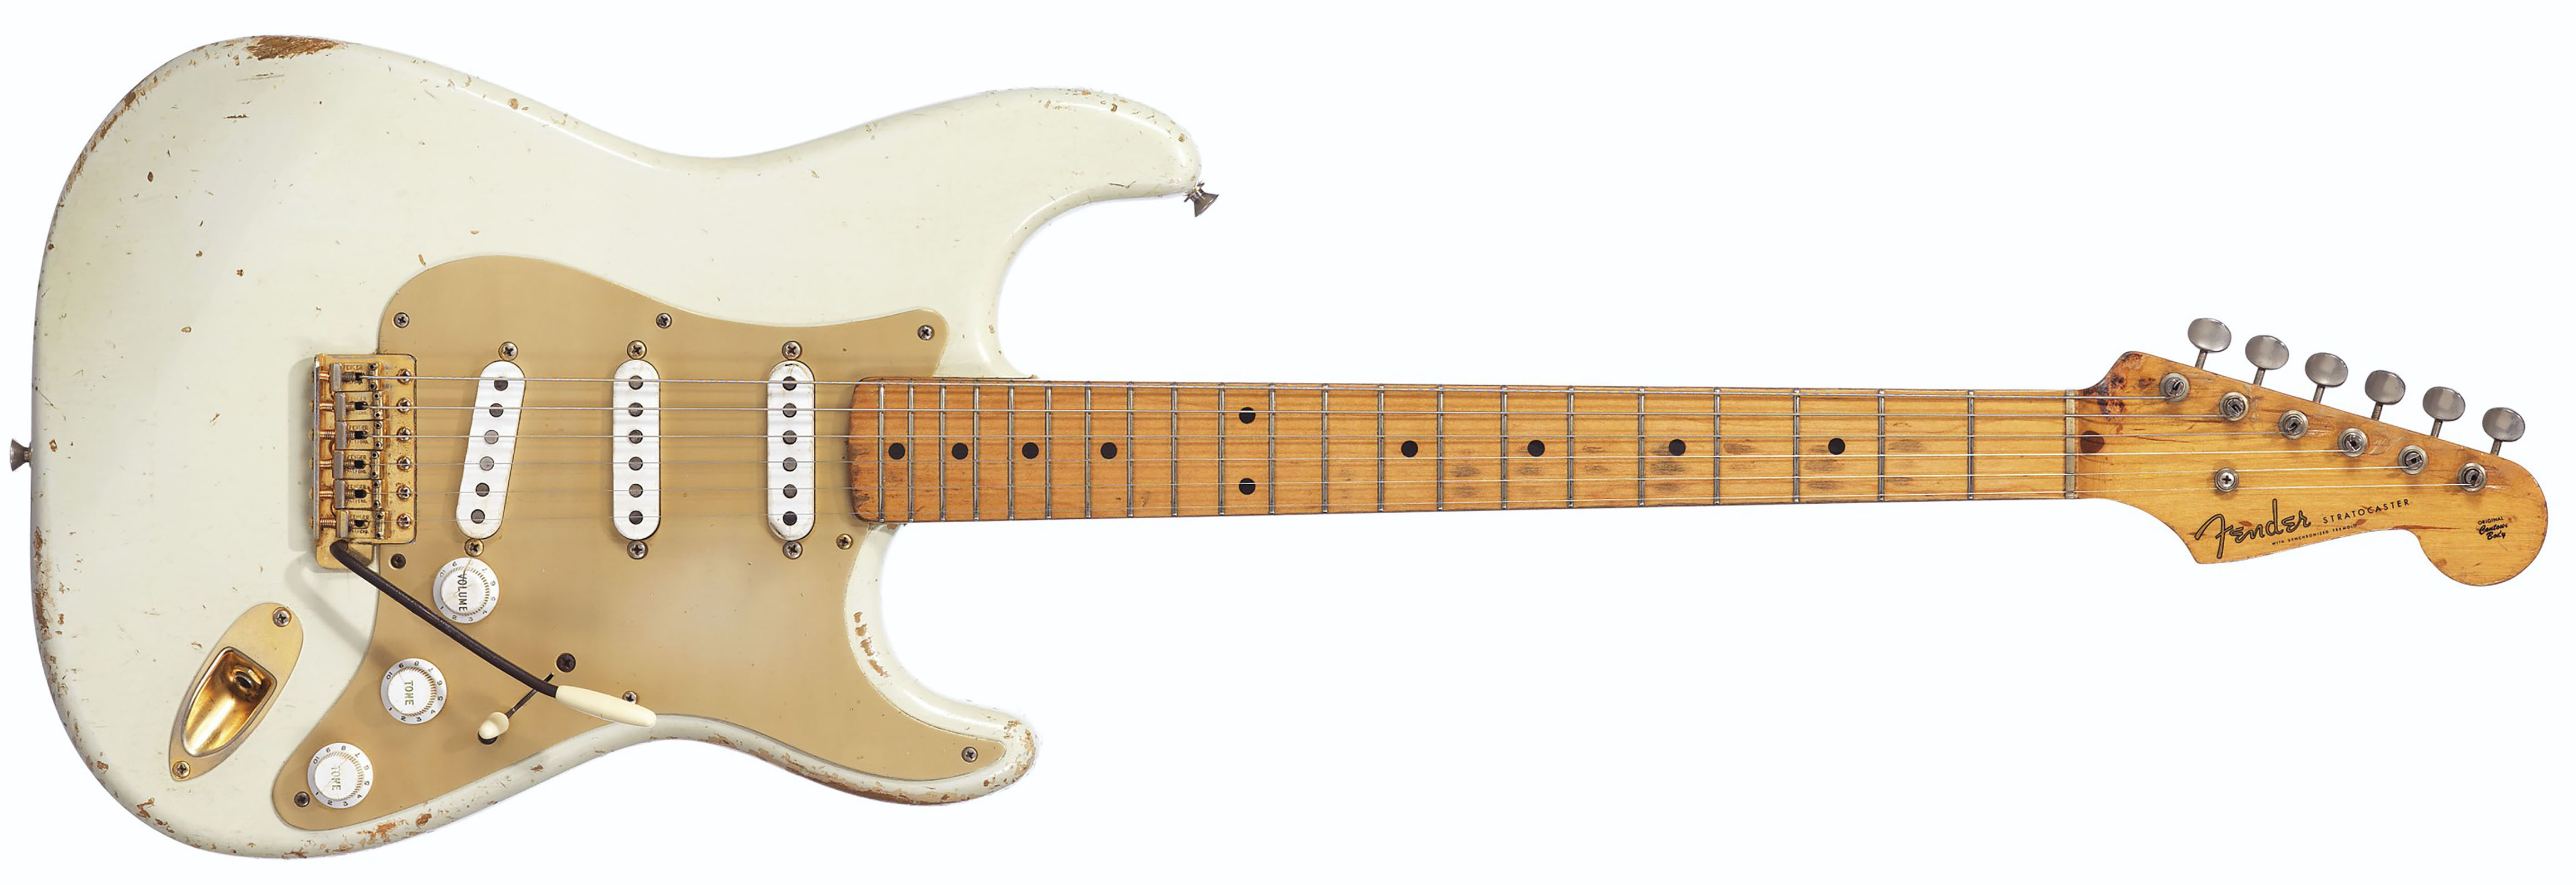 ranura acoplador internacional La Black Strat vendida por 3.975.000 dólares: la subasta de David Gilmour  bate todos los récords | Guitarristas